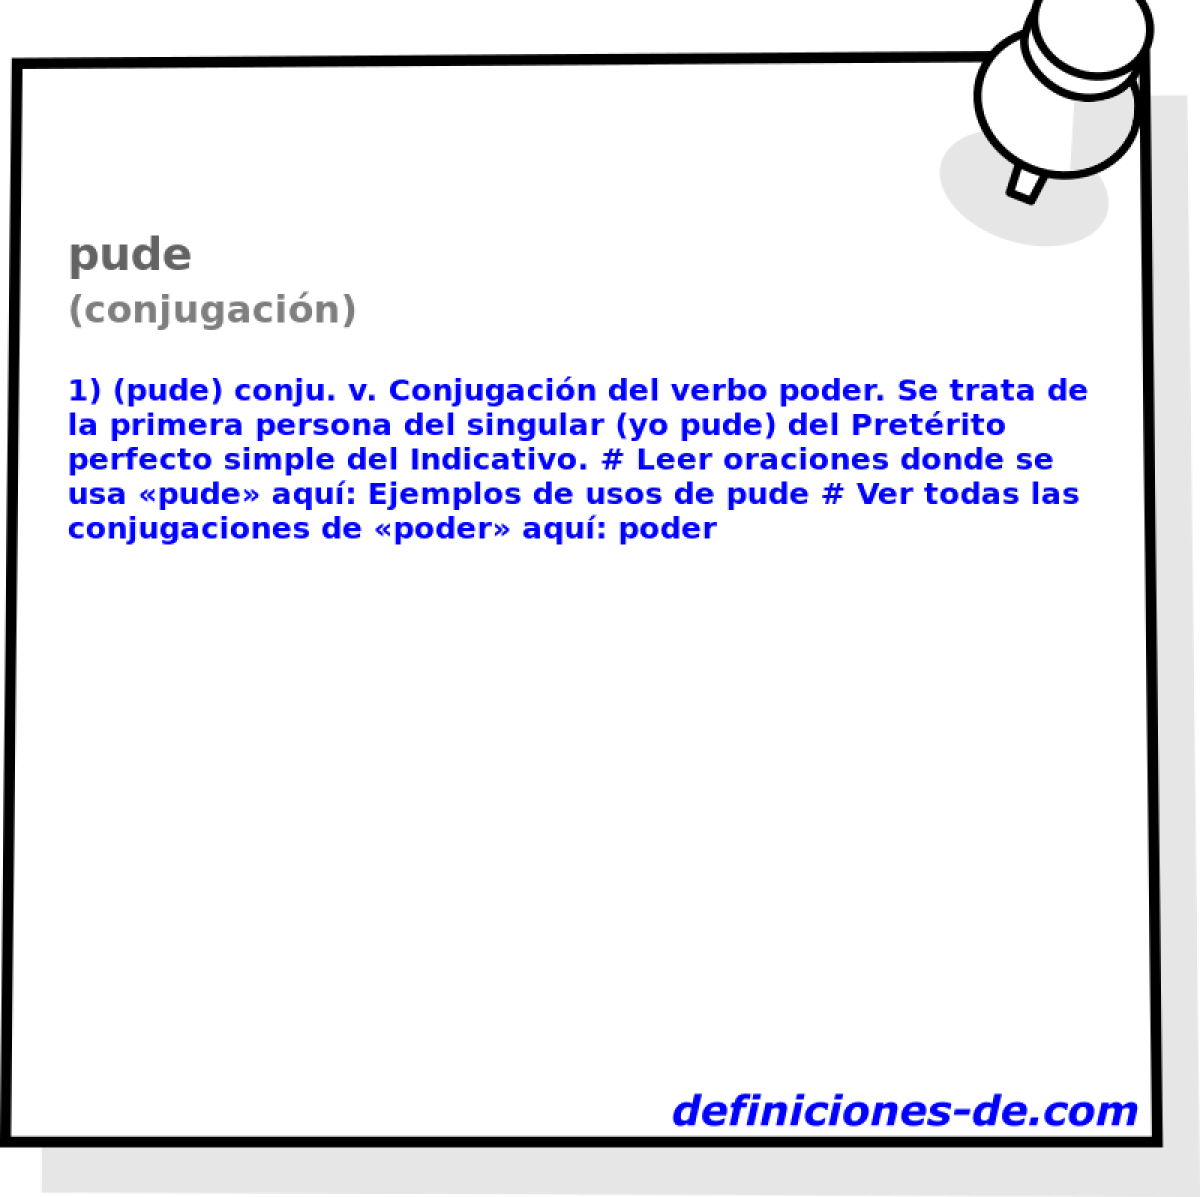 pude (conjugacin)